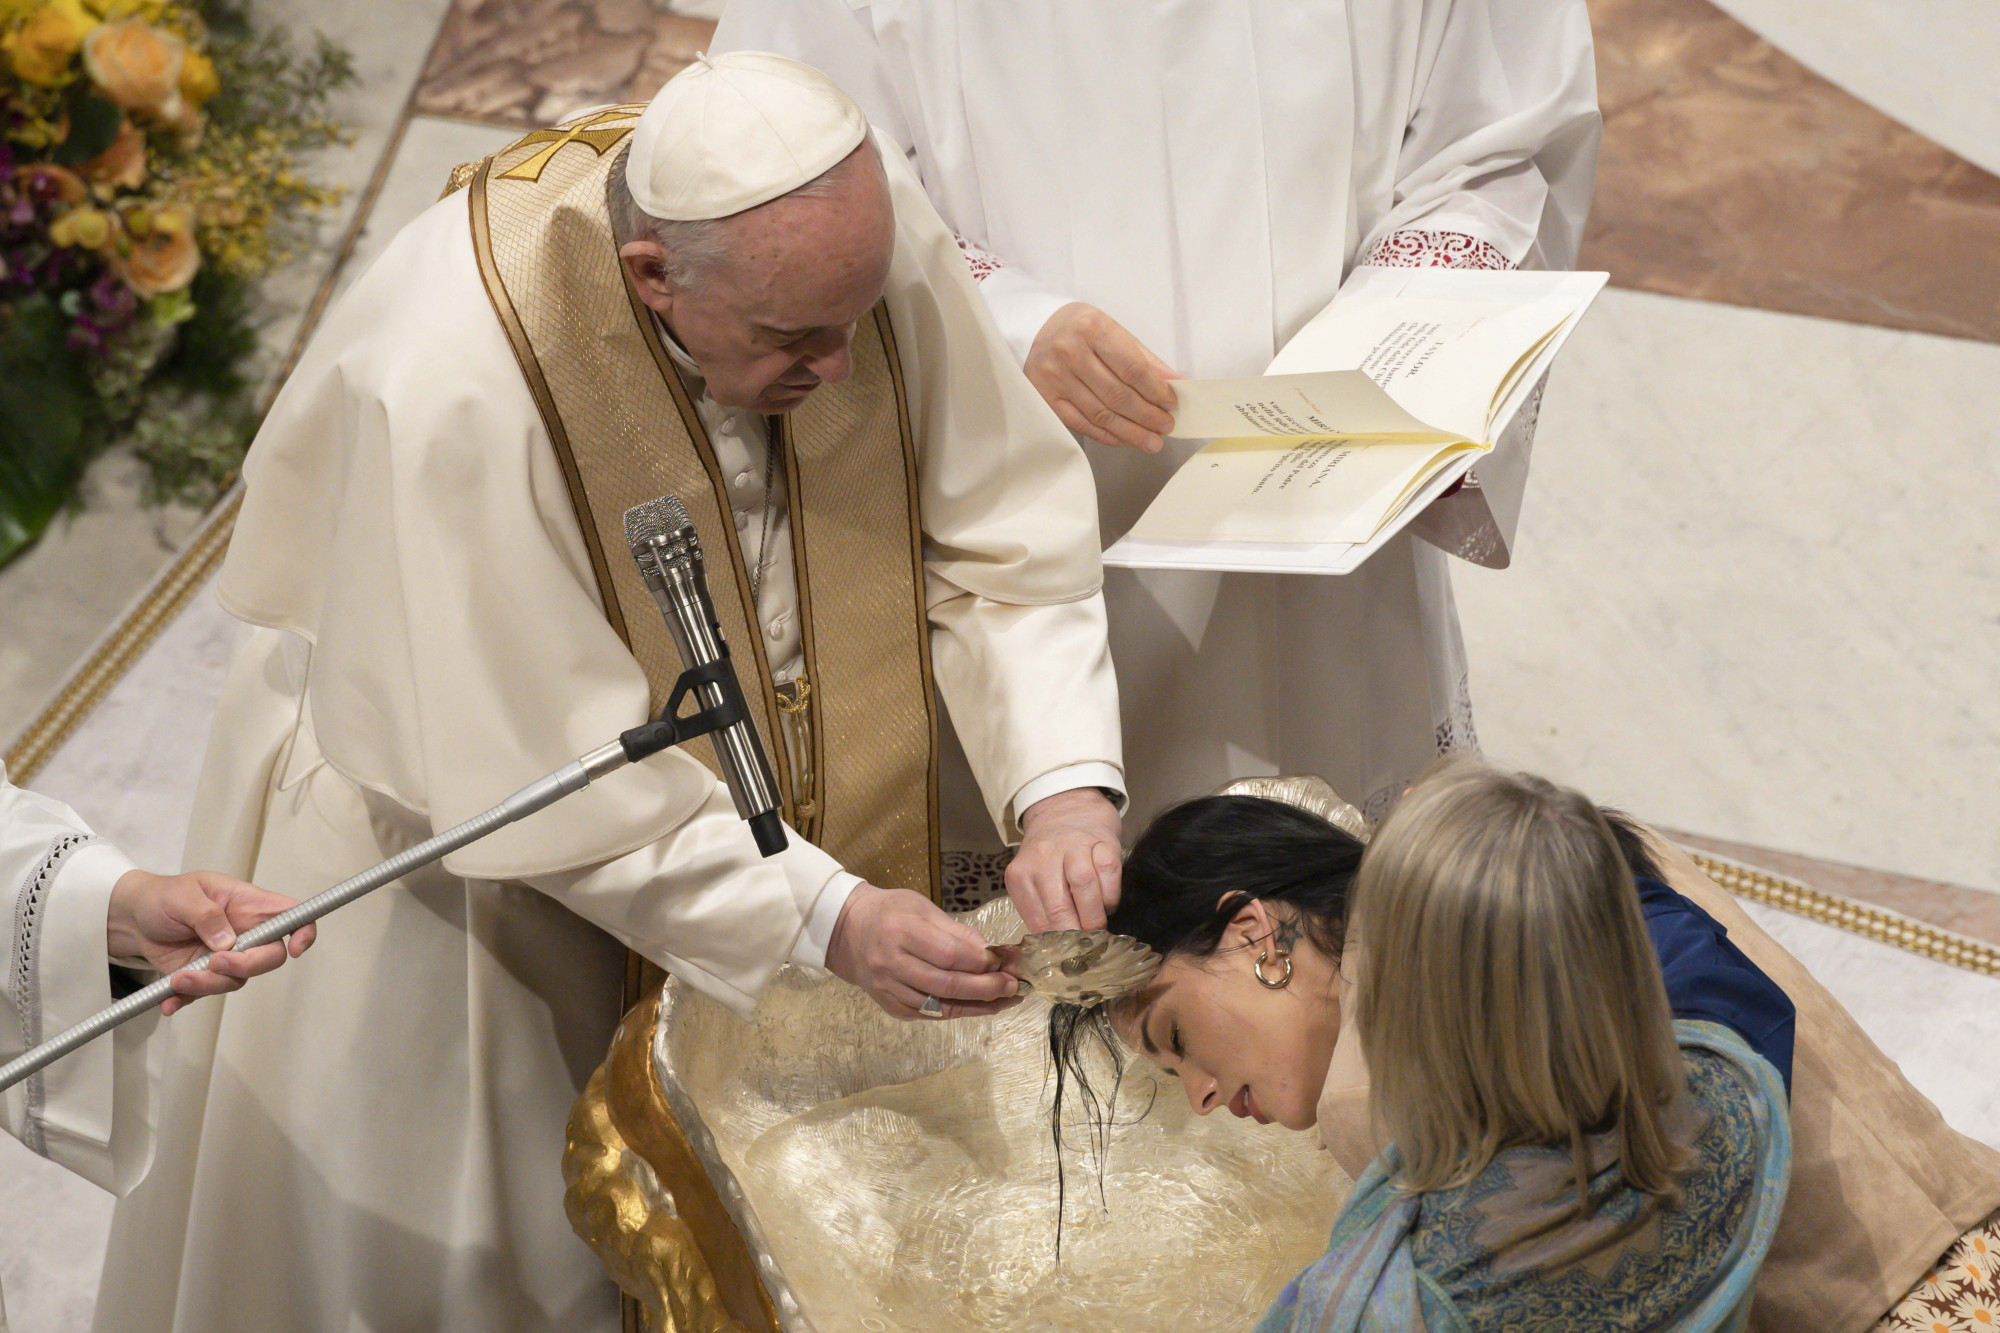 A Vatikán hangsúlyozza: meg lehet keresztelni a transz és meleg párok gyerekeit is